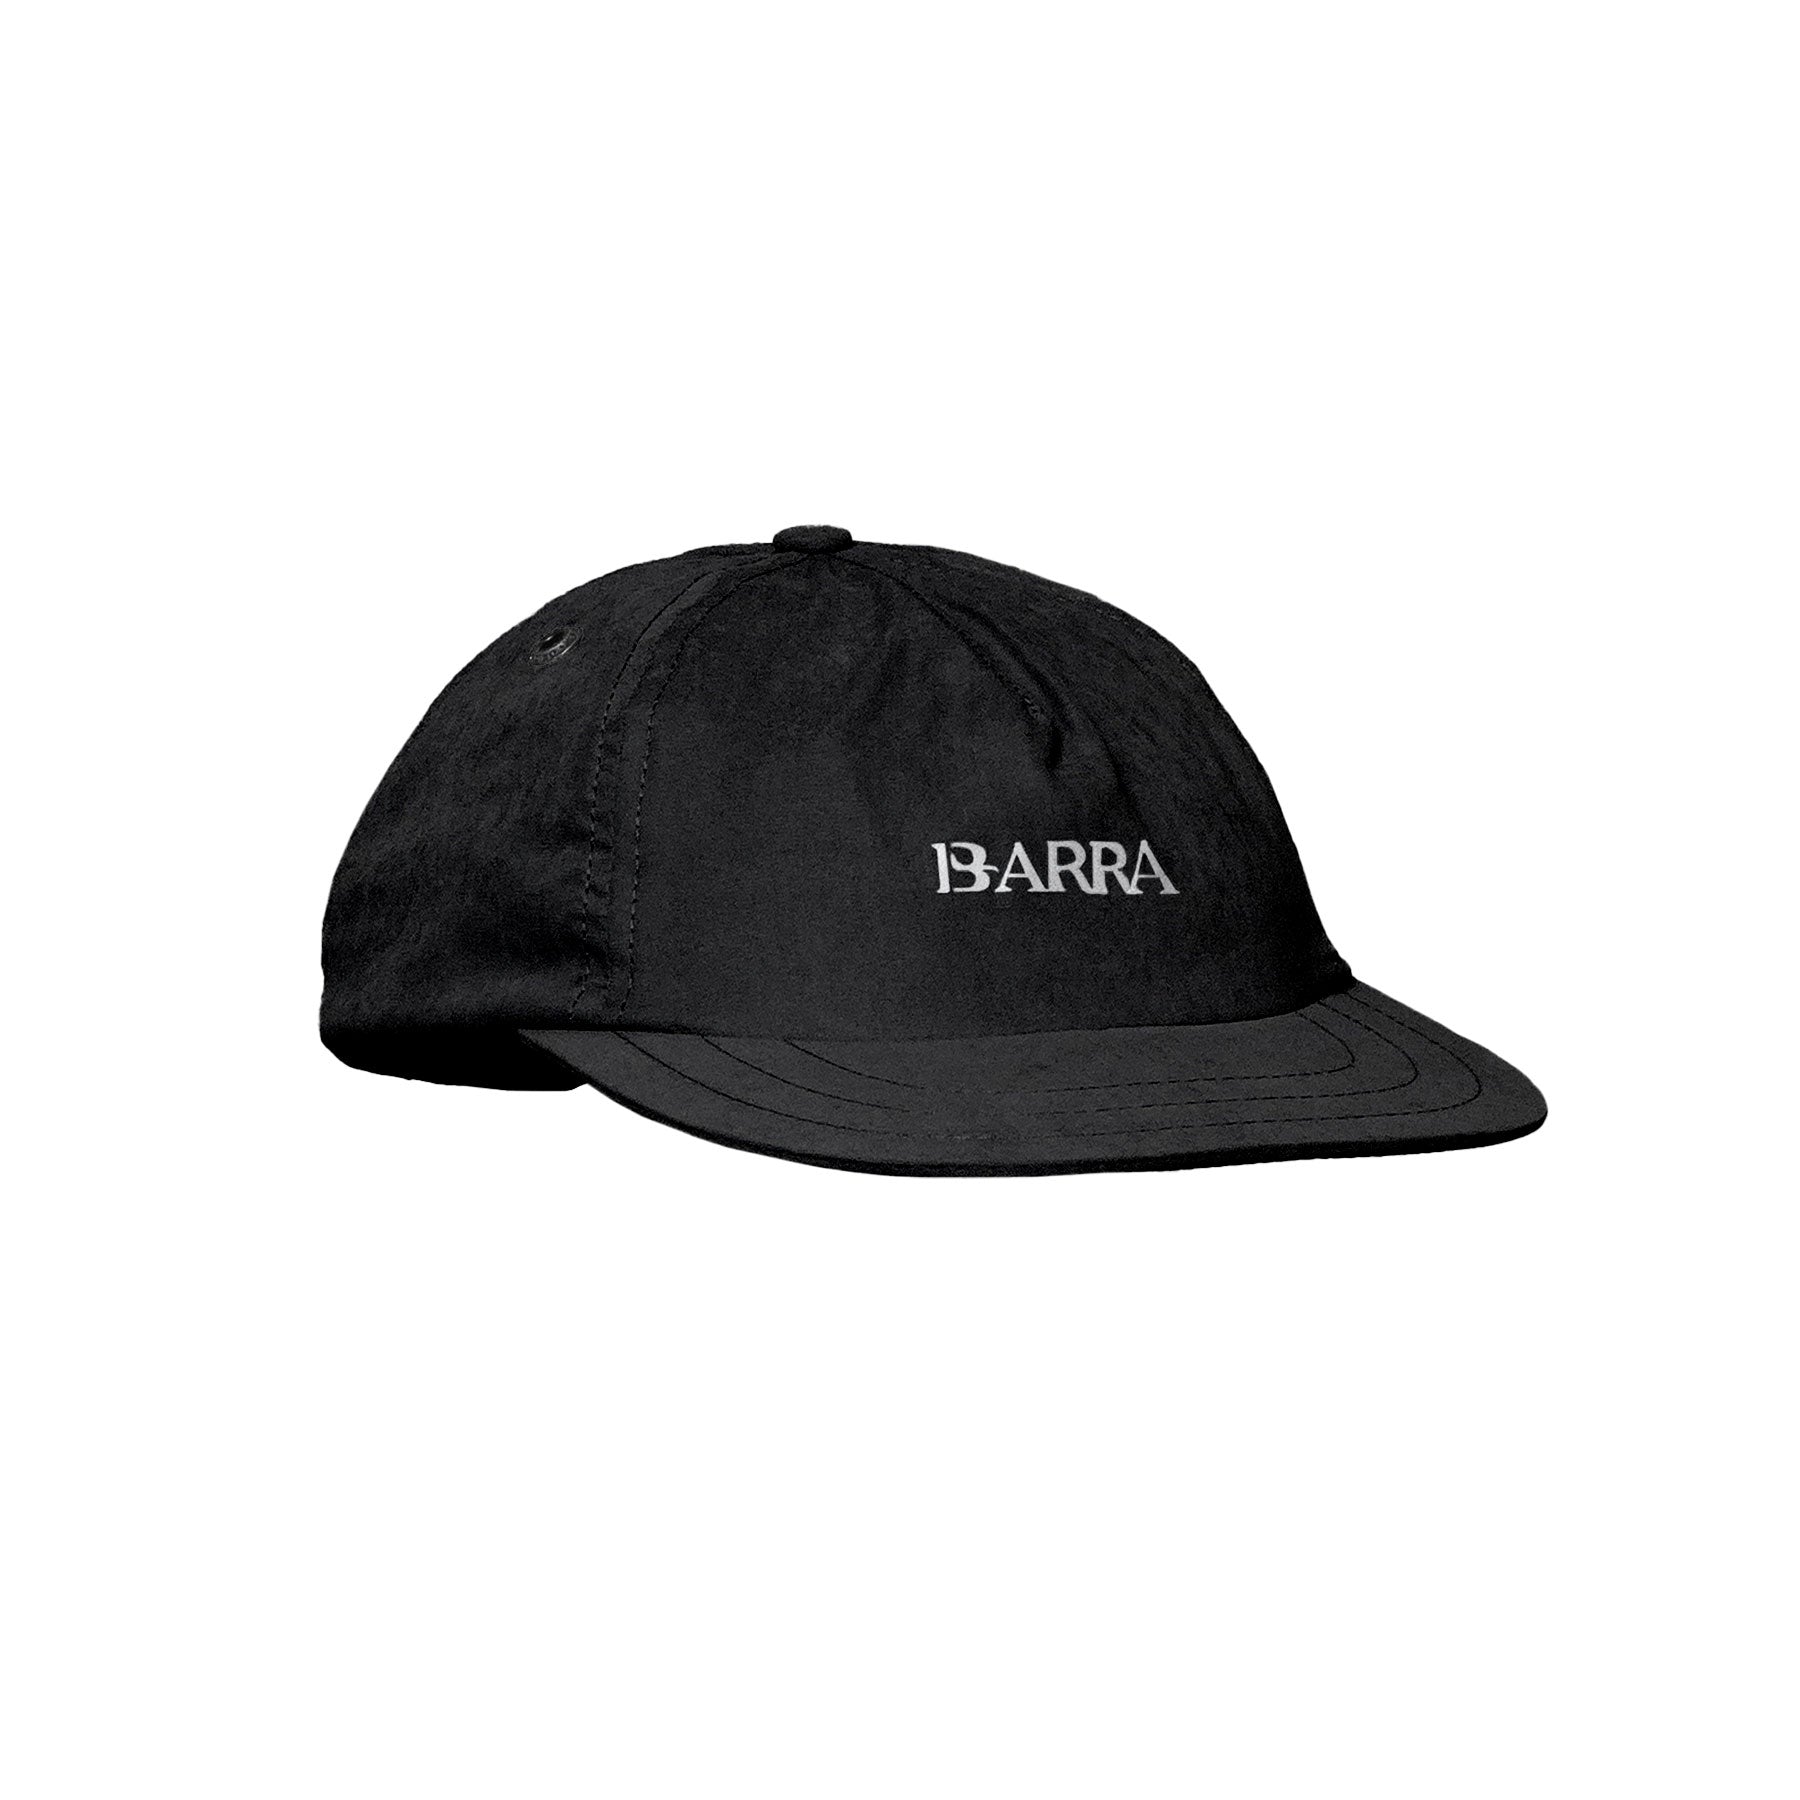 Barra Crew - SnapBack Barra Logo Preto